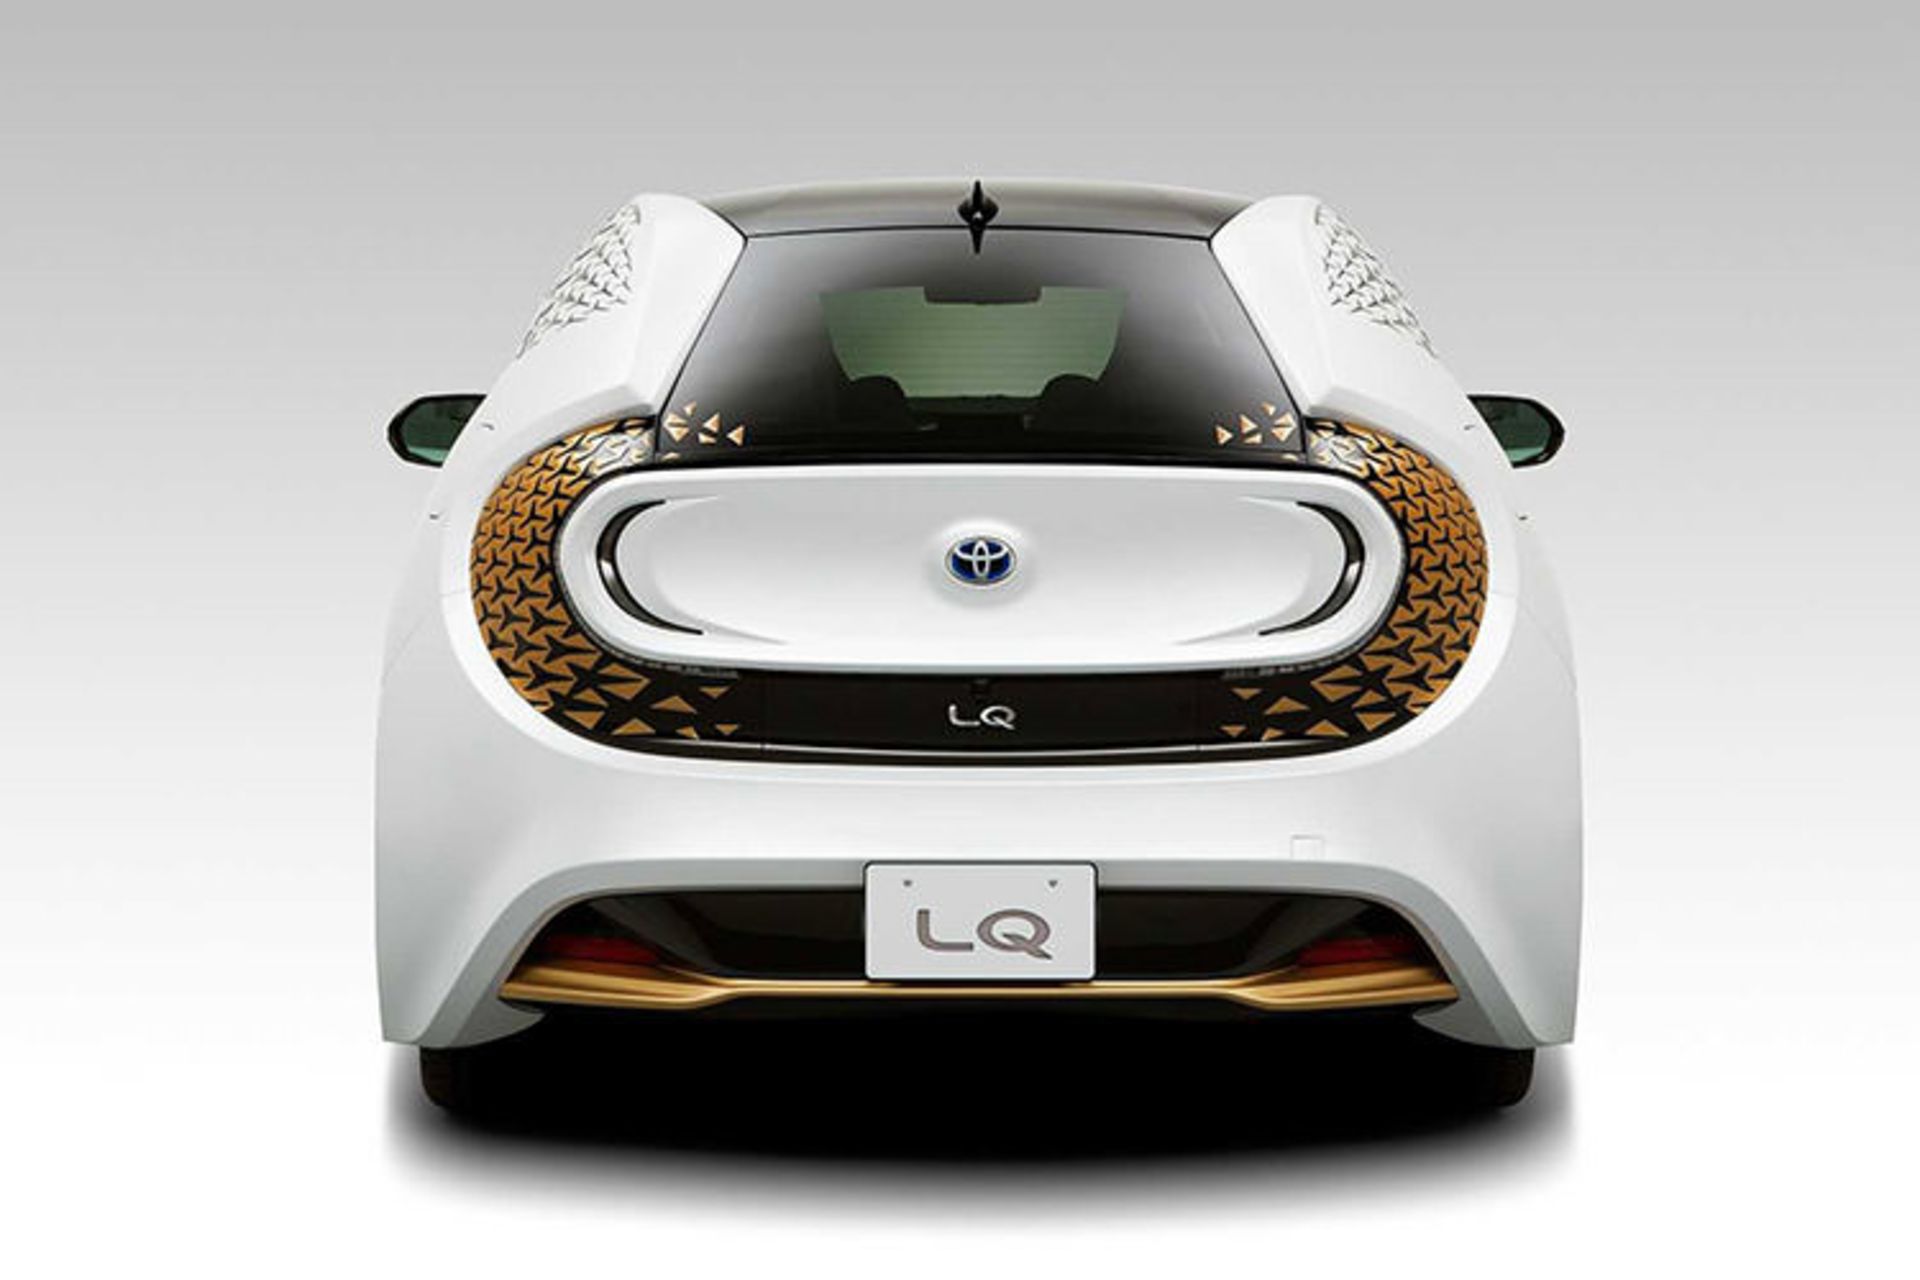 مرجع متخصصين ايران Toyota LQ concept / خودروي مفهومي خودران تويوتا ال كيو